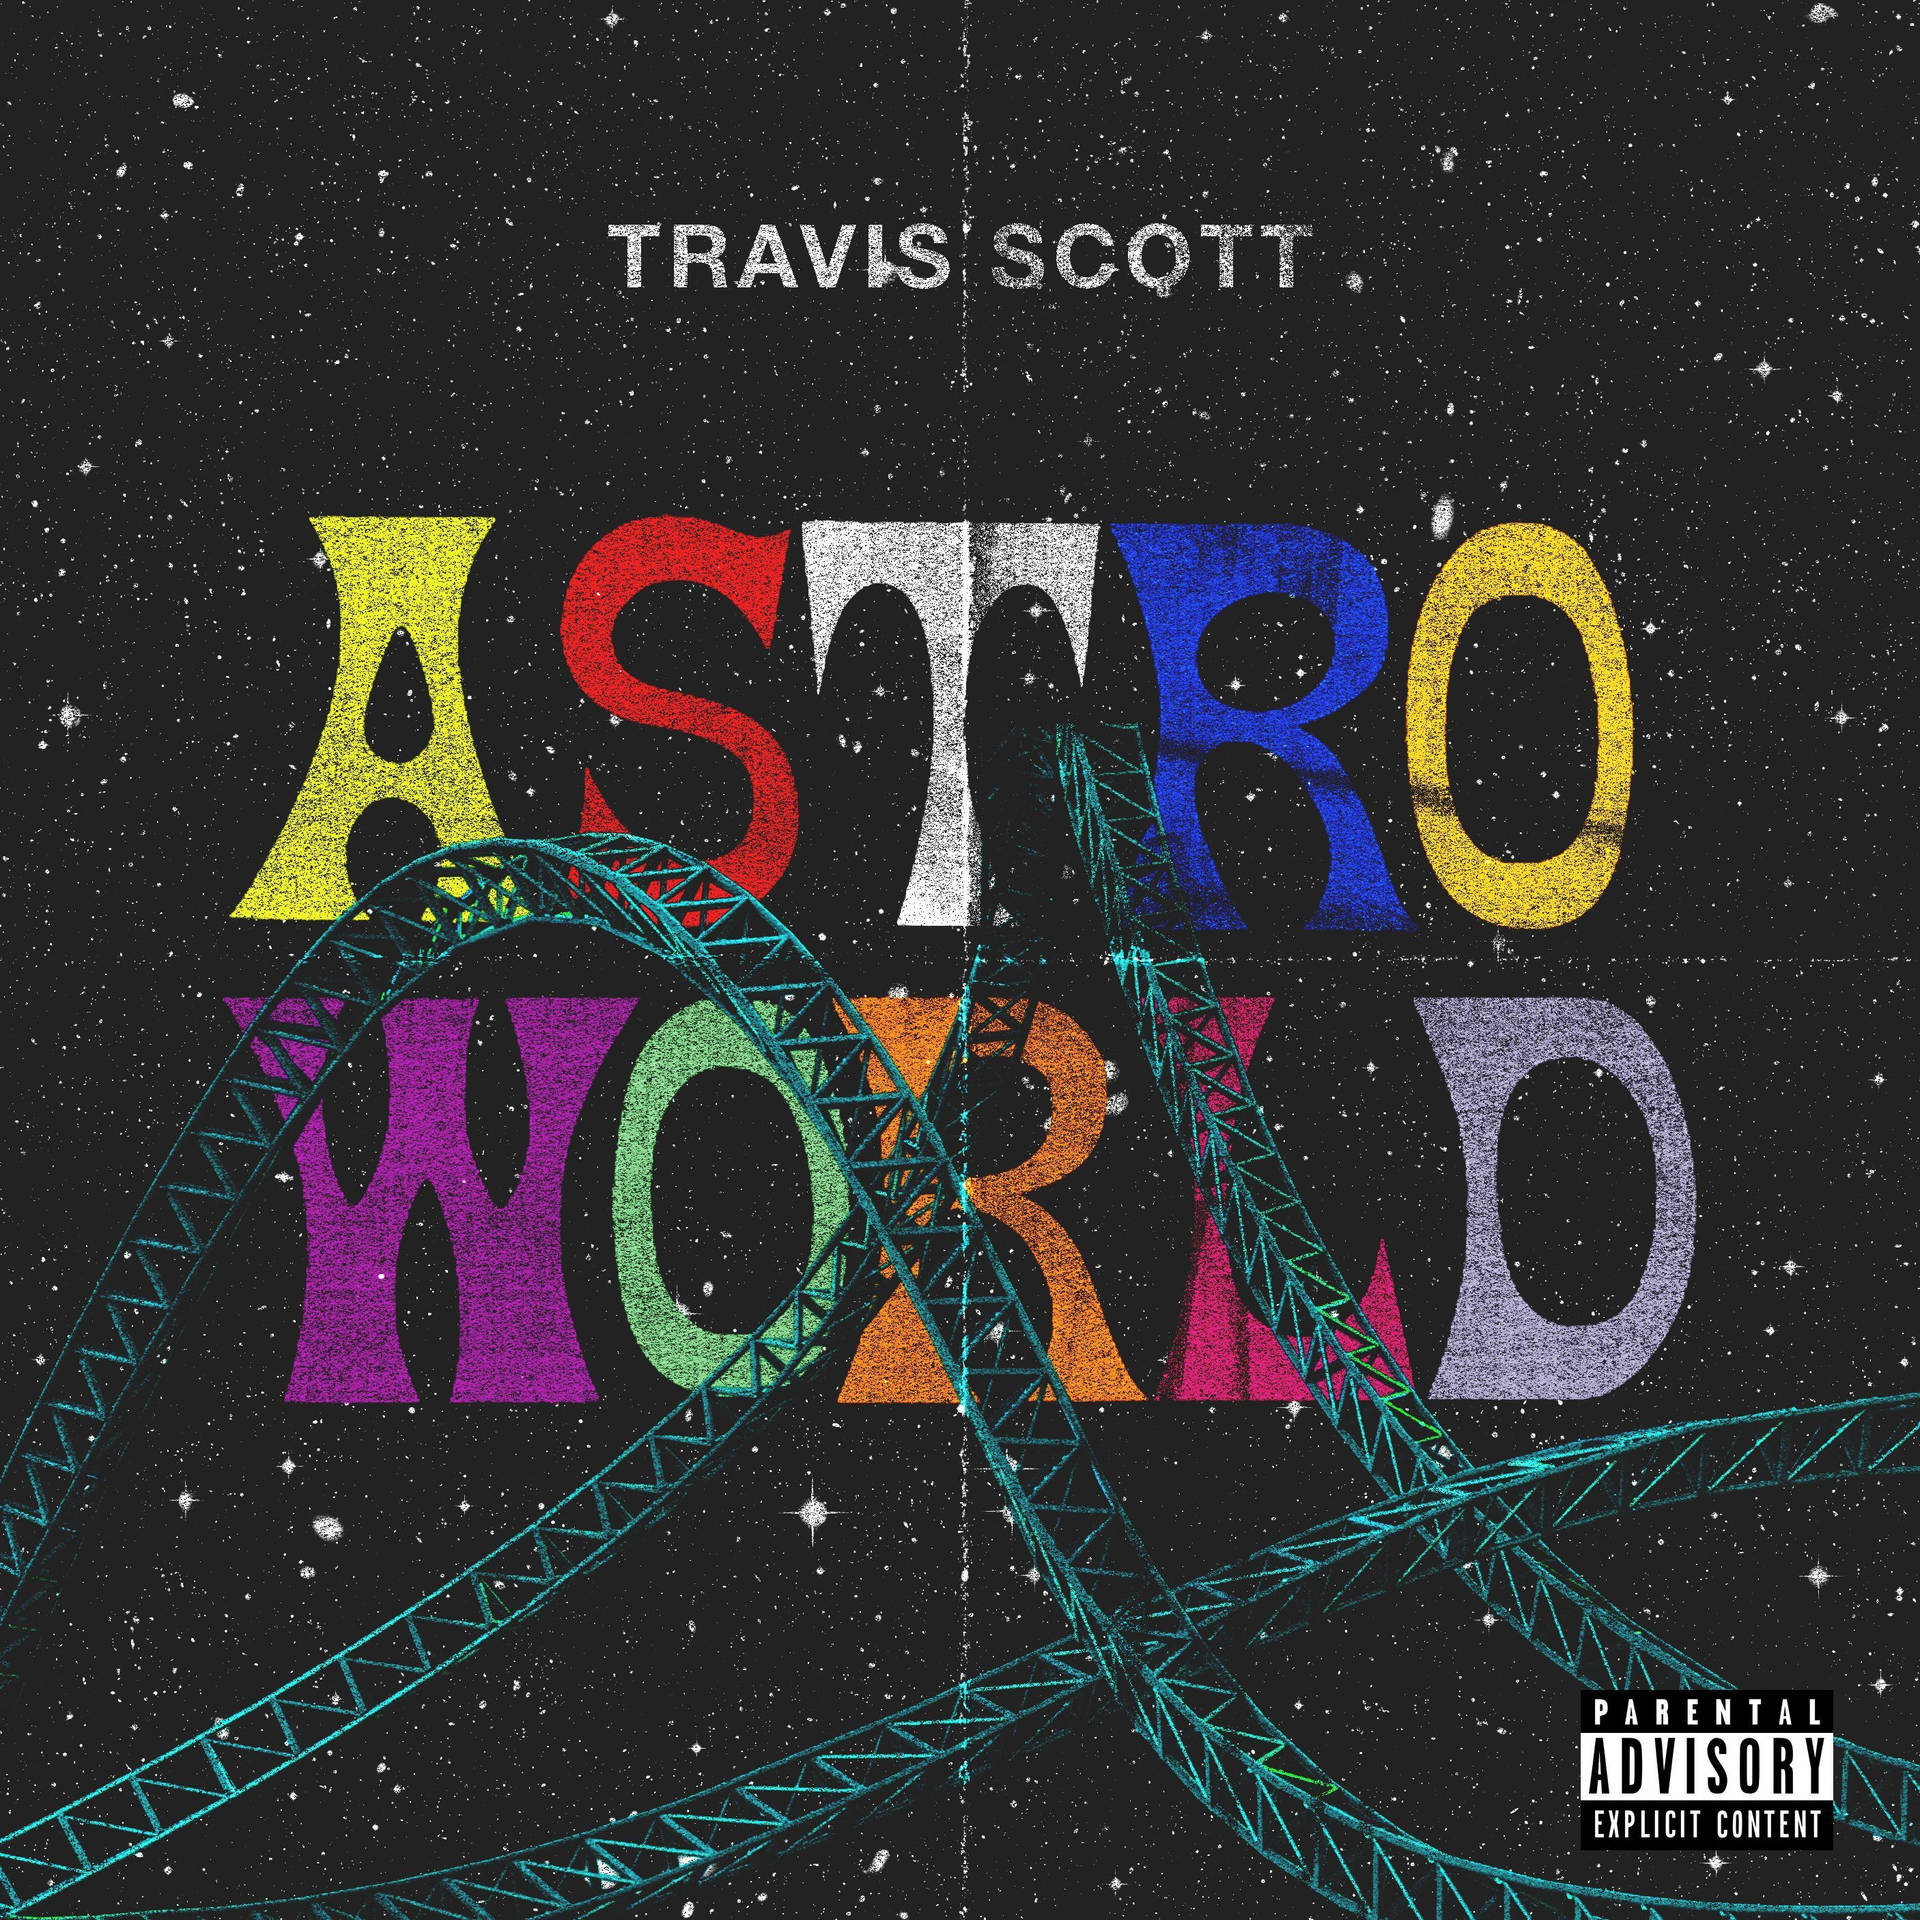 Travis Scott Astroworld Parental Advisory Cover